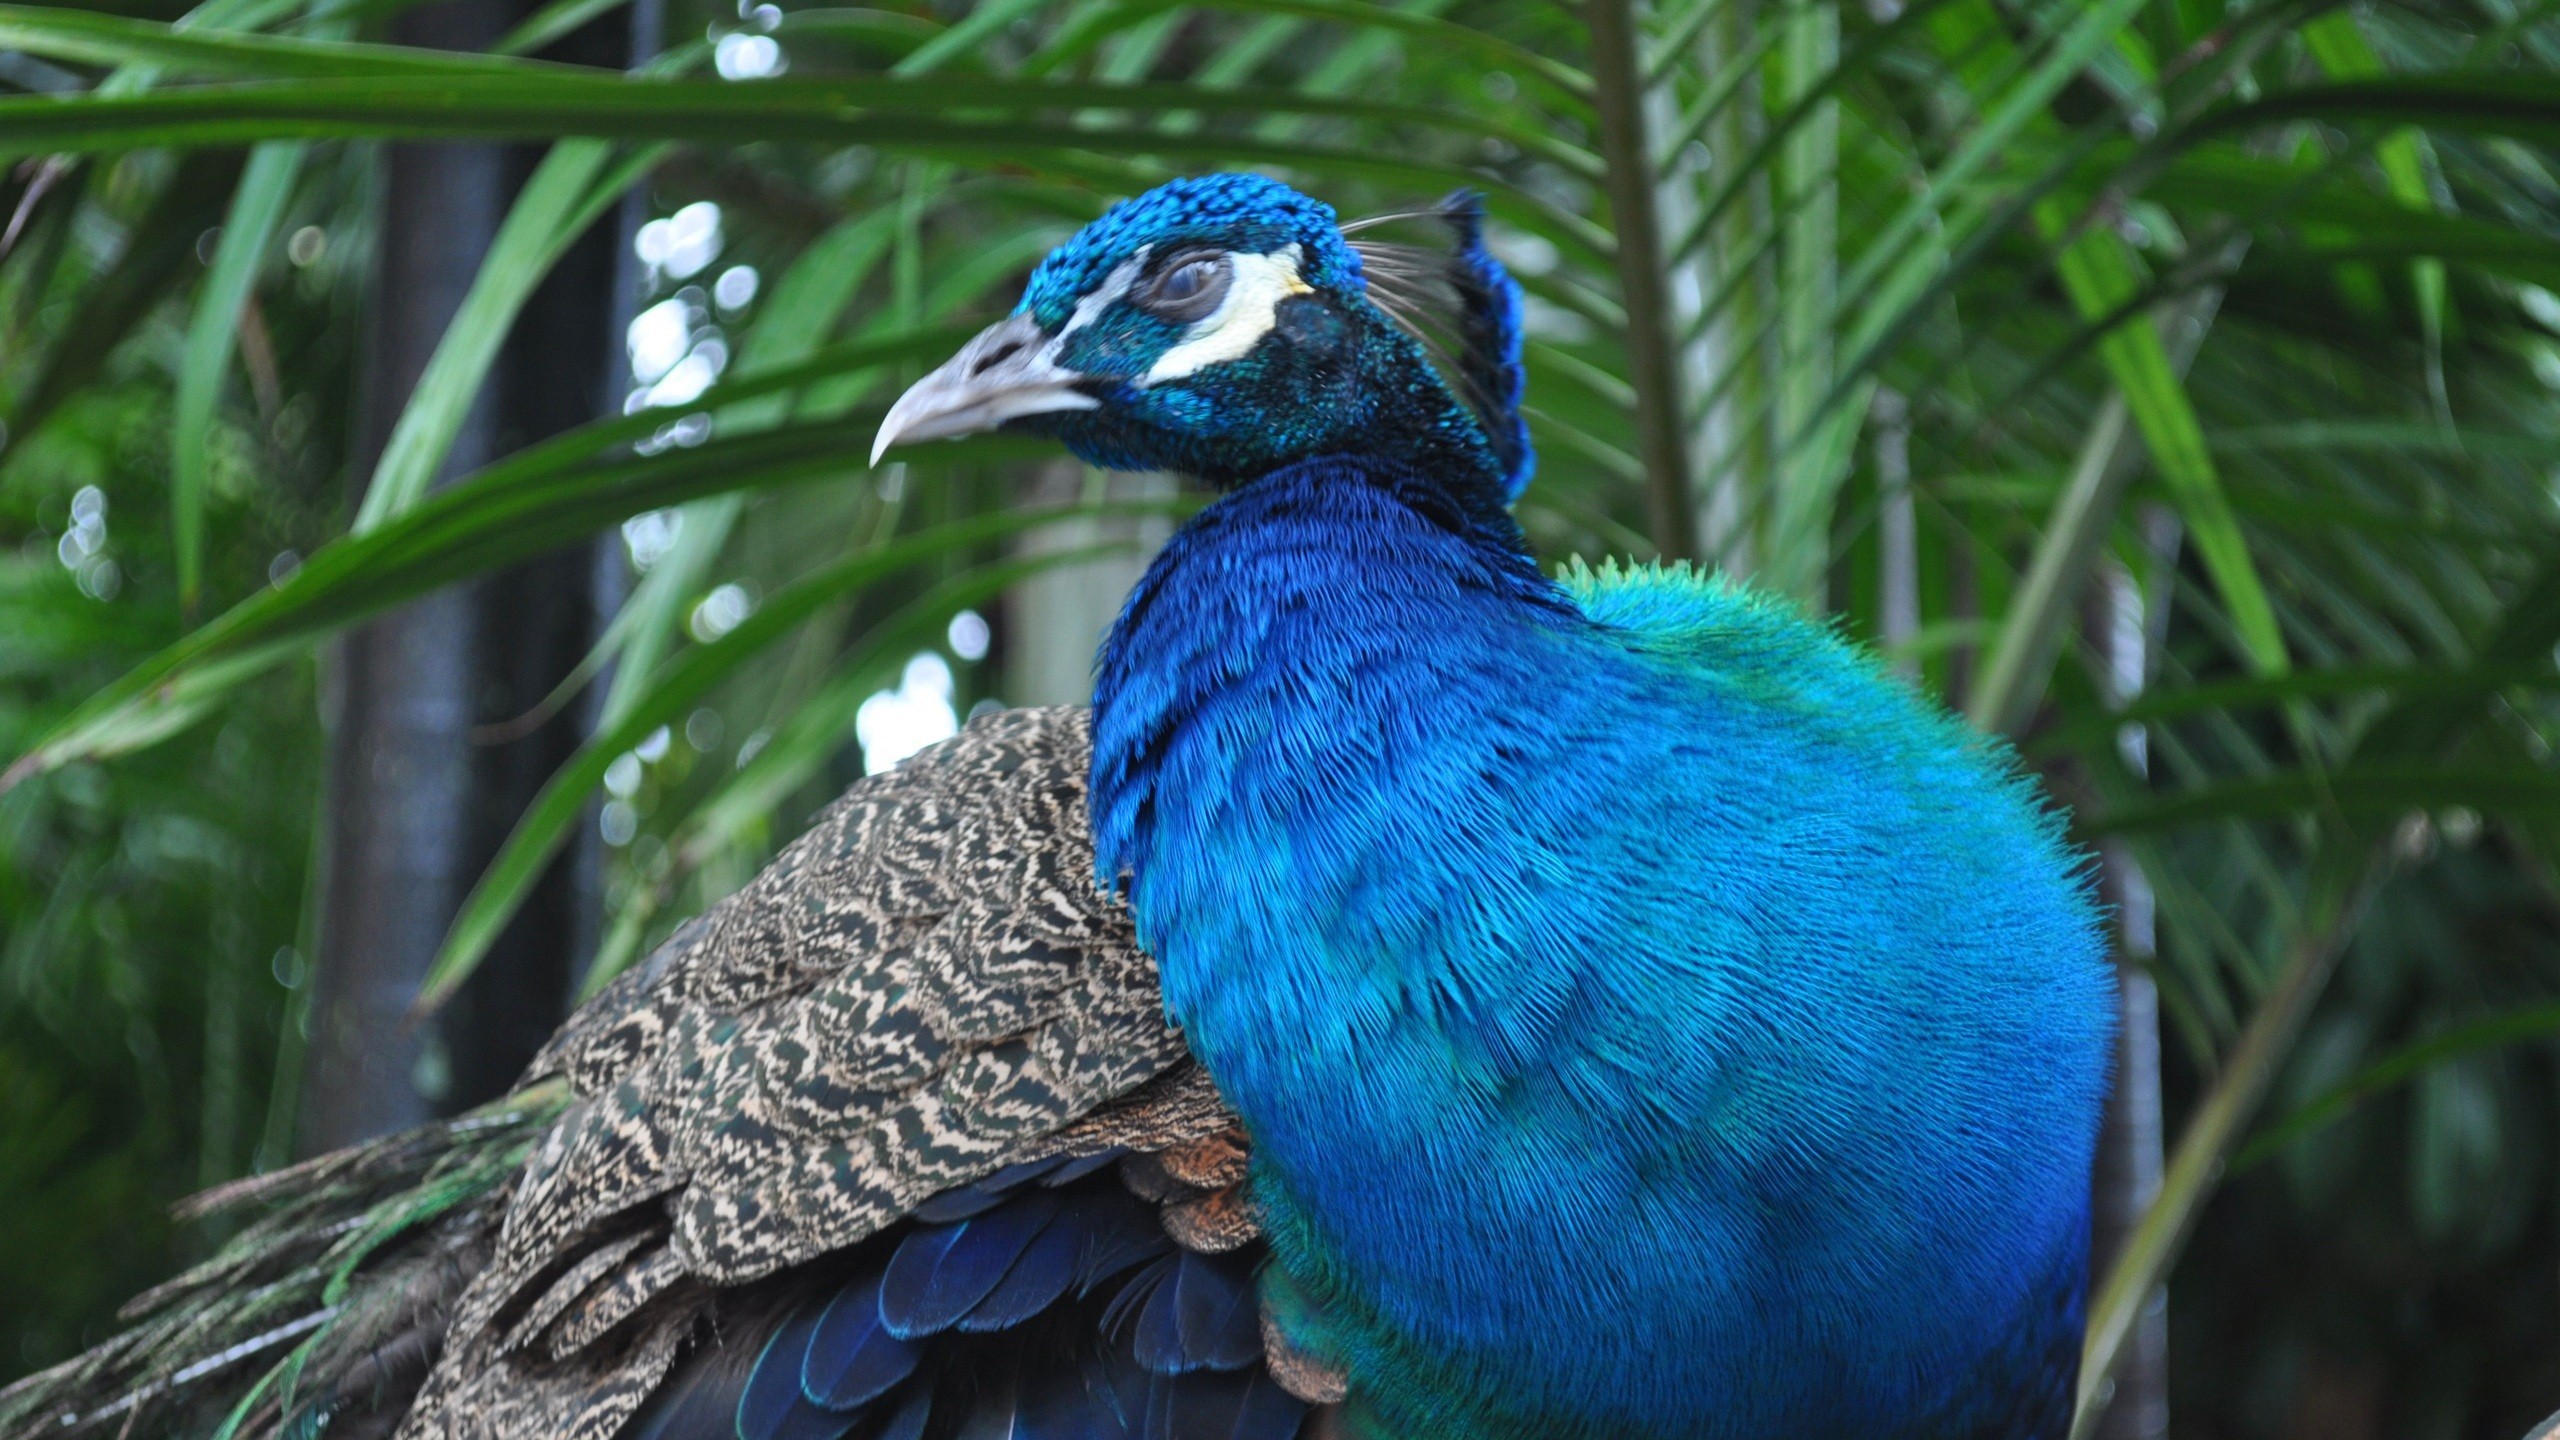  Indian Blue Peacock High Definition Bird Wallpaper HD Wallpapers